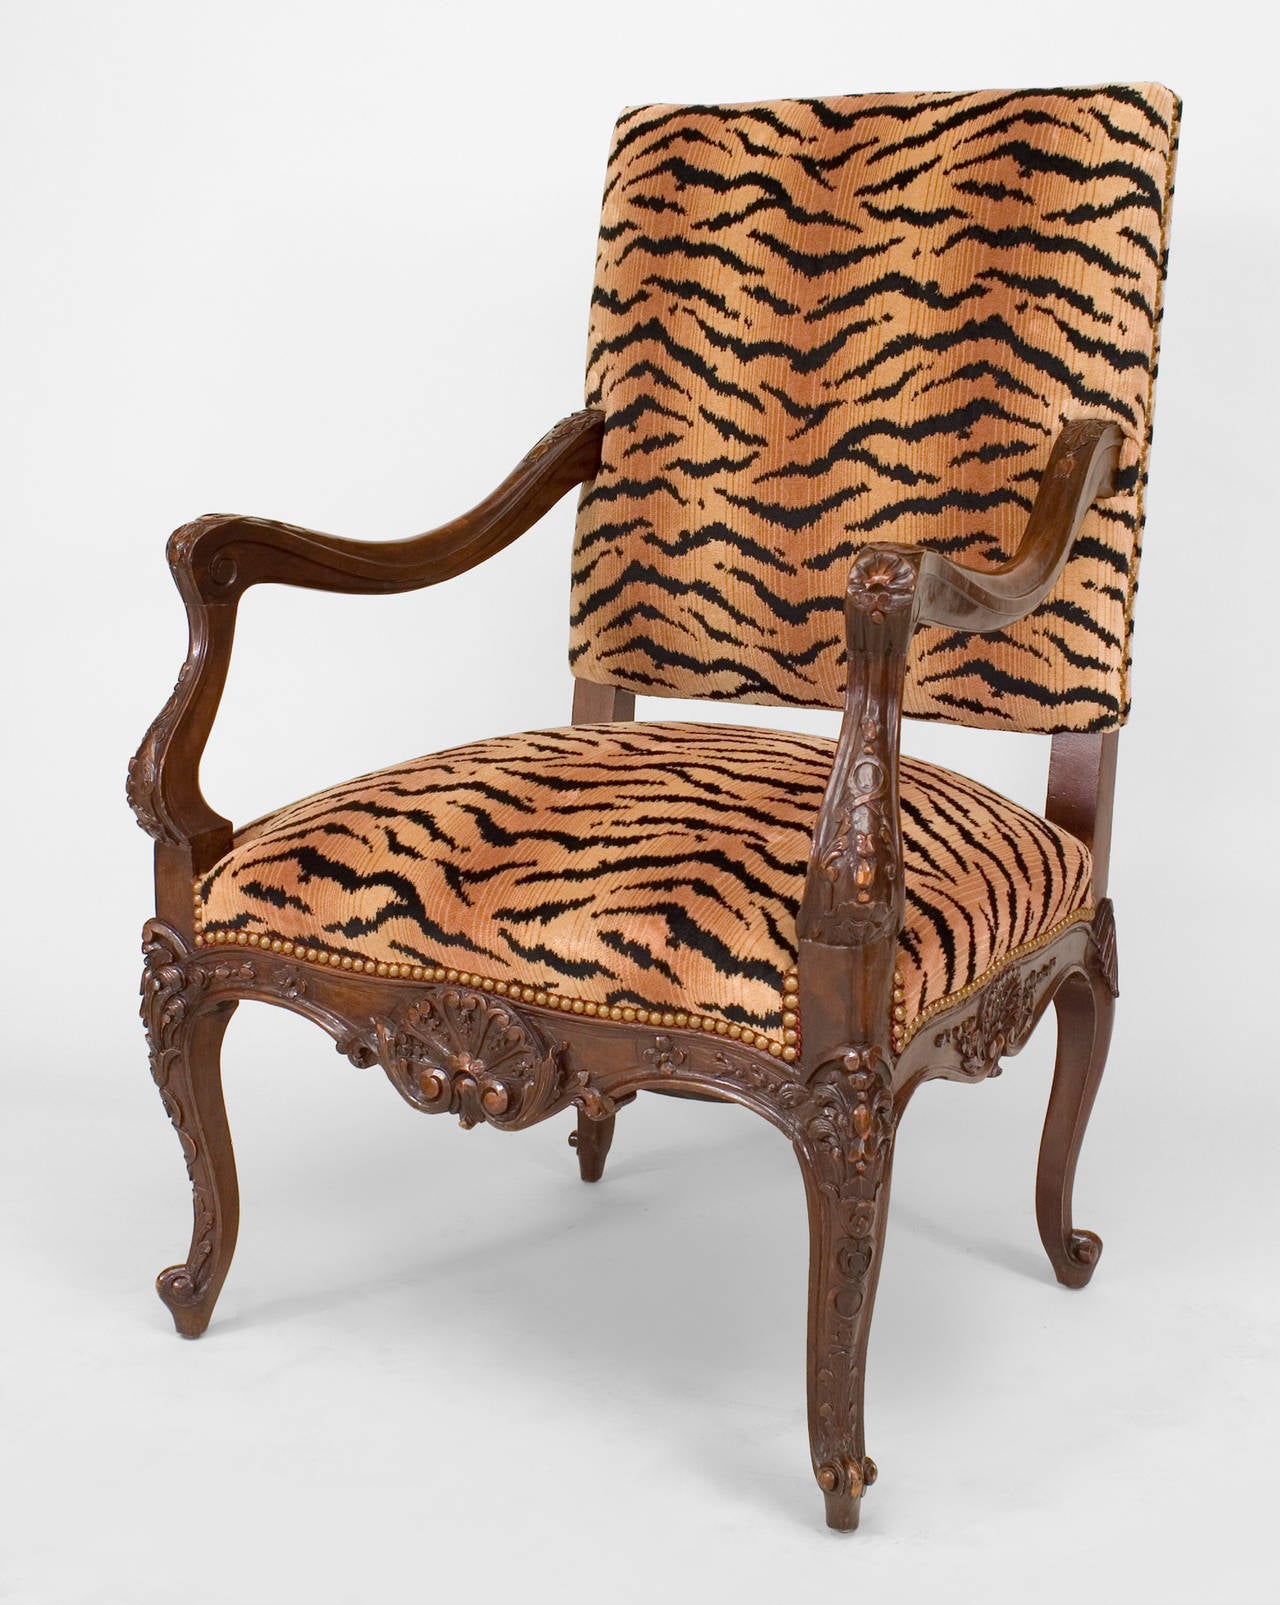 Offener Sessel aus geschnitztem Nussbaum im französischen Regence-Stil (19./20. Jh.) mit gepolstertem Sitz und Rückenlehne aus Tigerfell.
